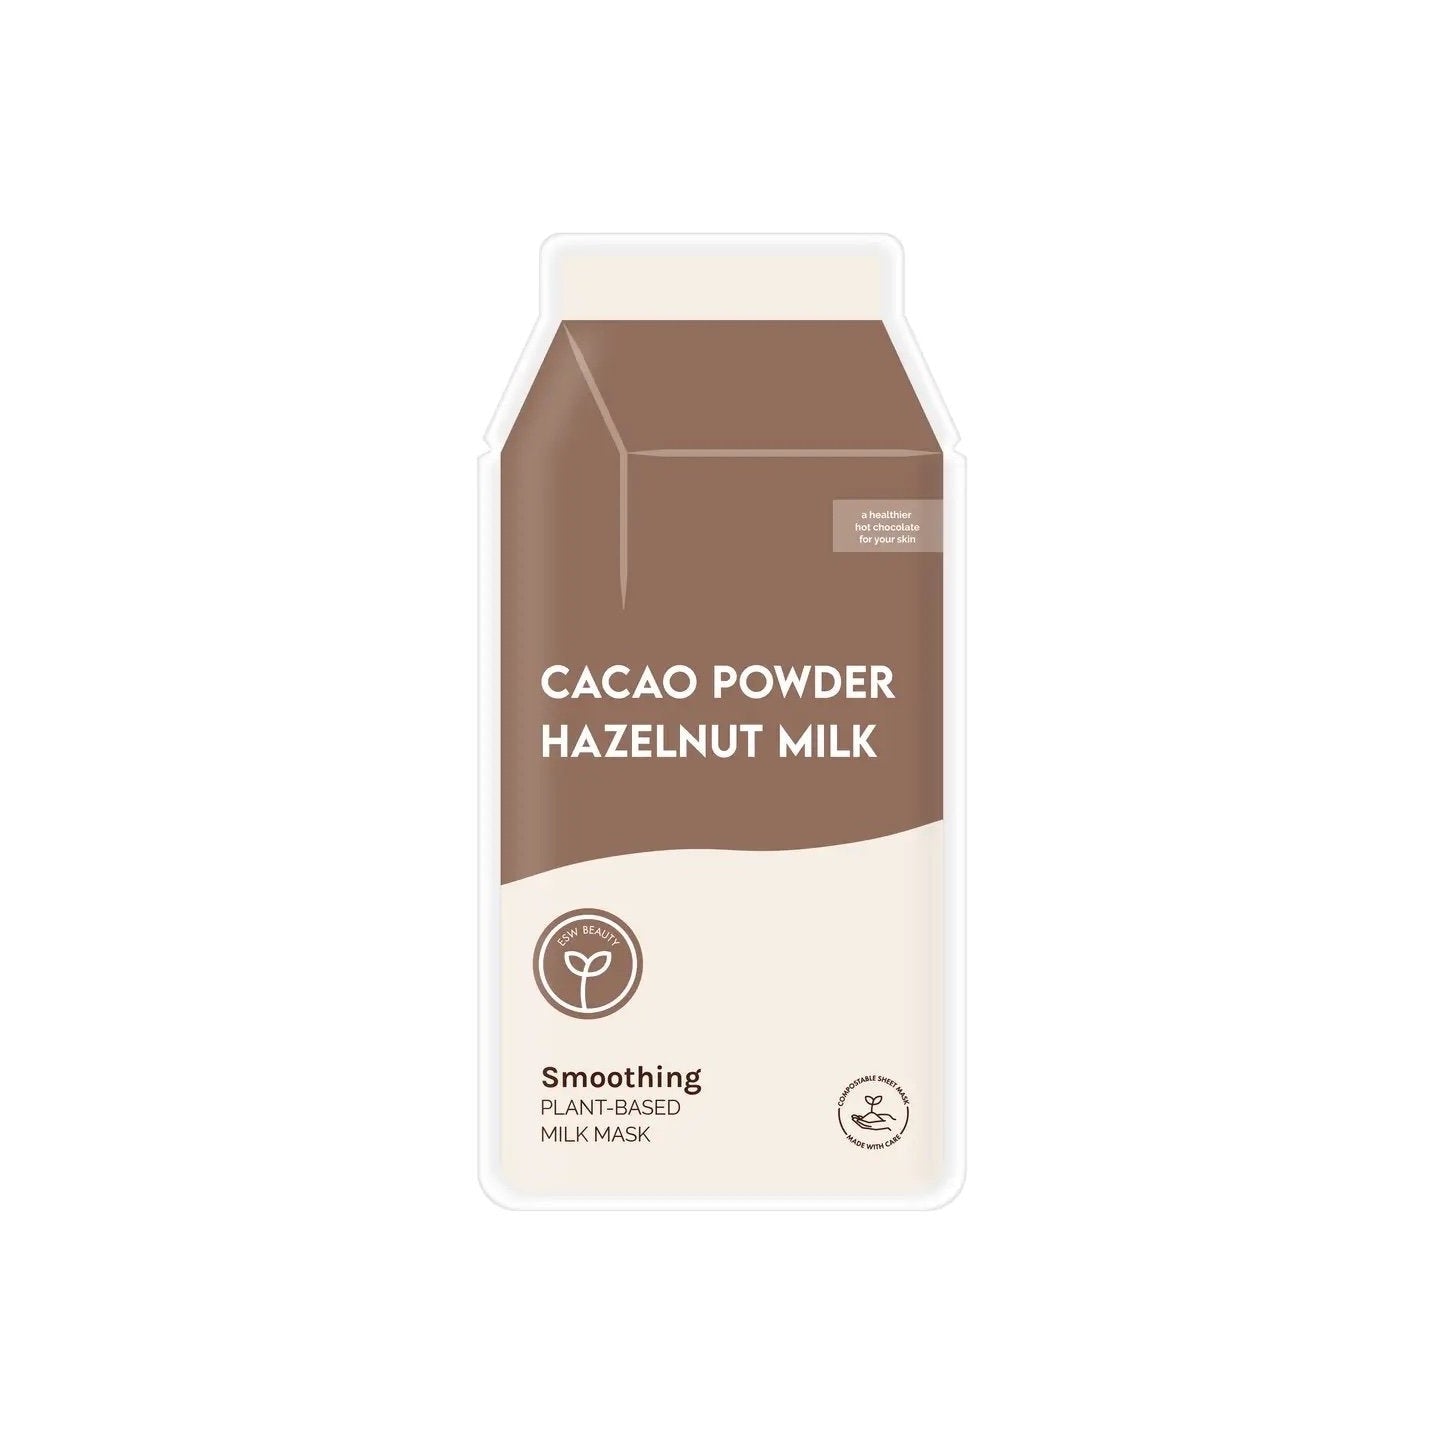 Cacao Powder Hazelnut Milk Smoothing Plant-Based Milk Mask packaging on white background.